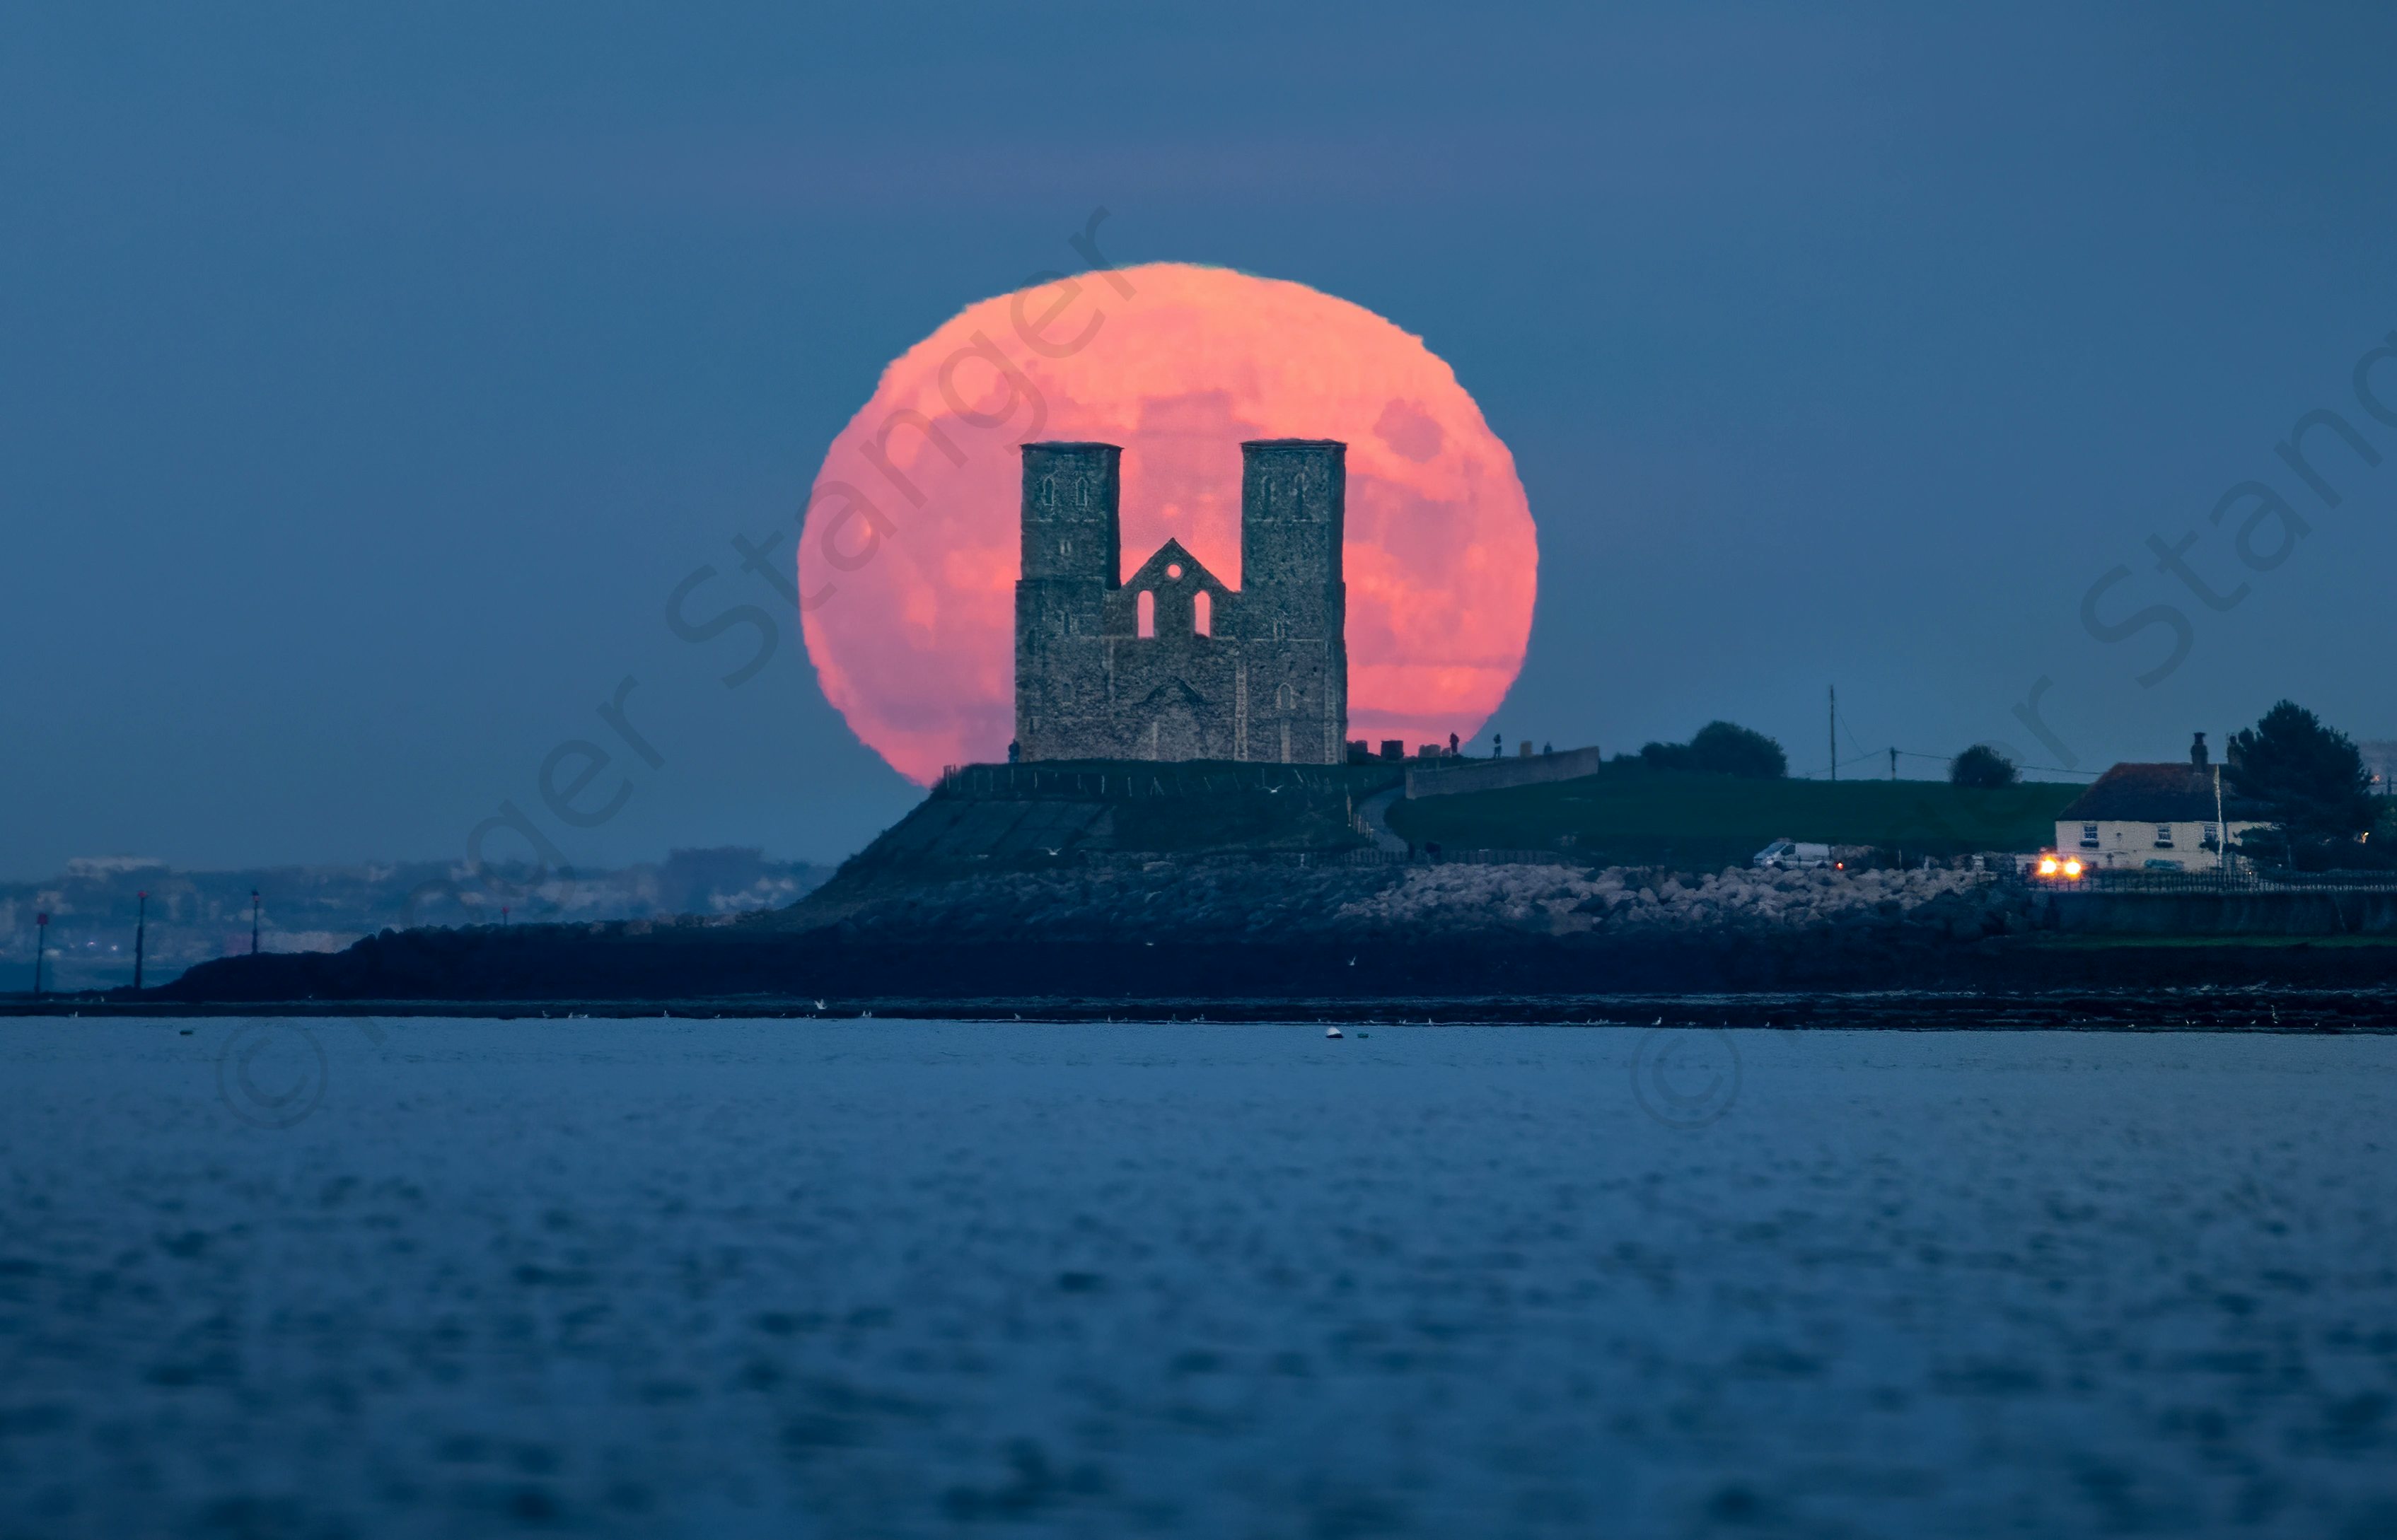 Reculver Moonrise From Herne Bay